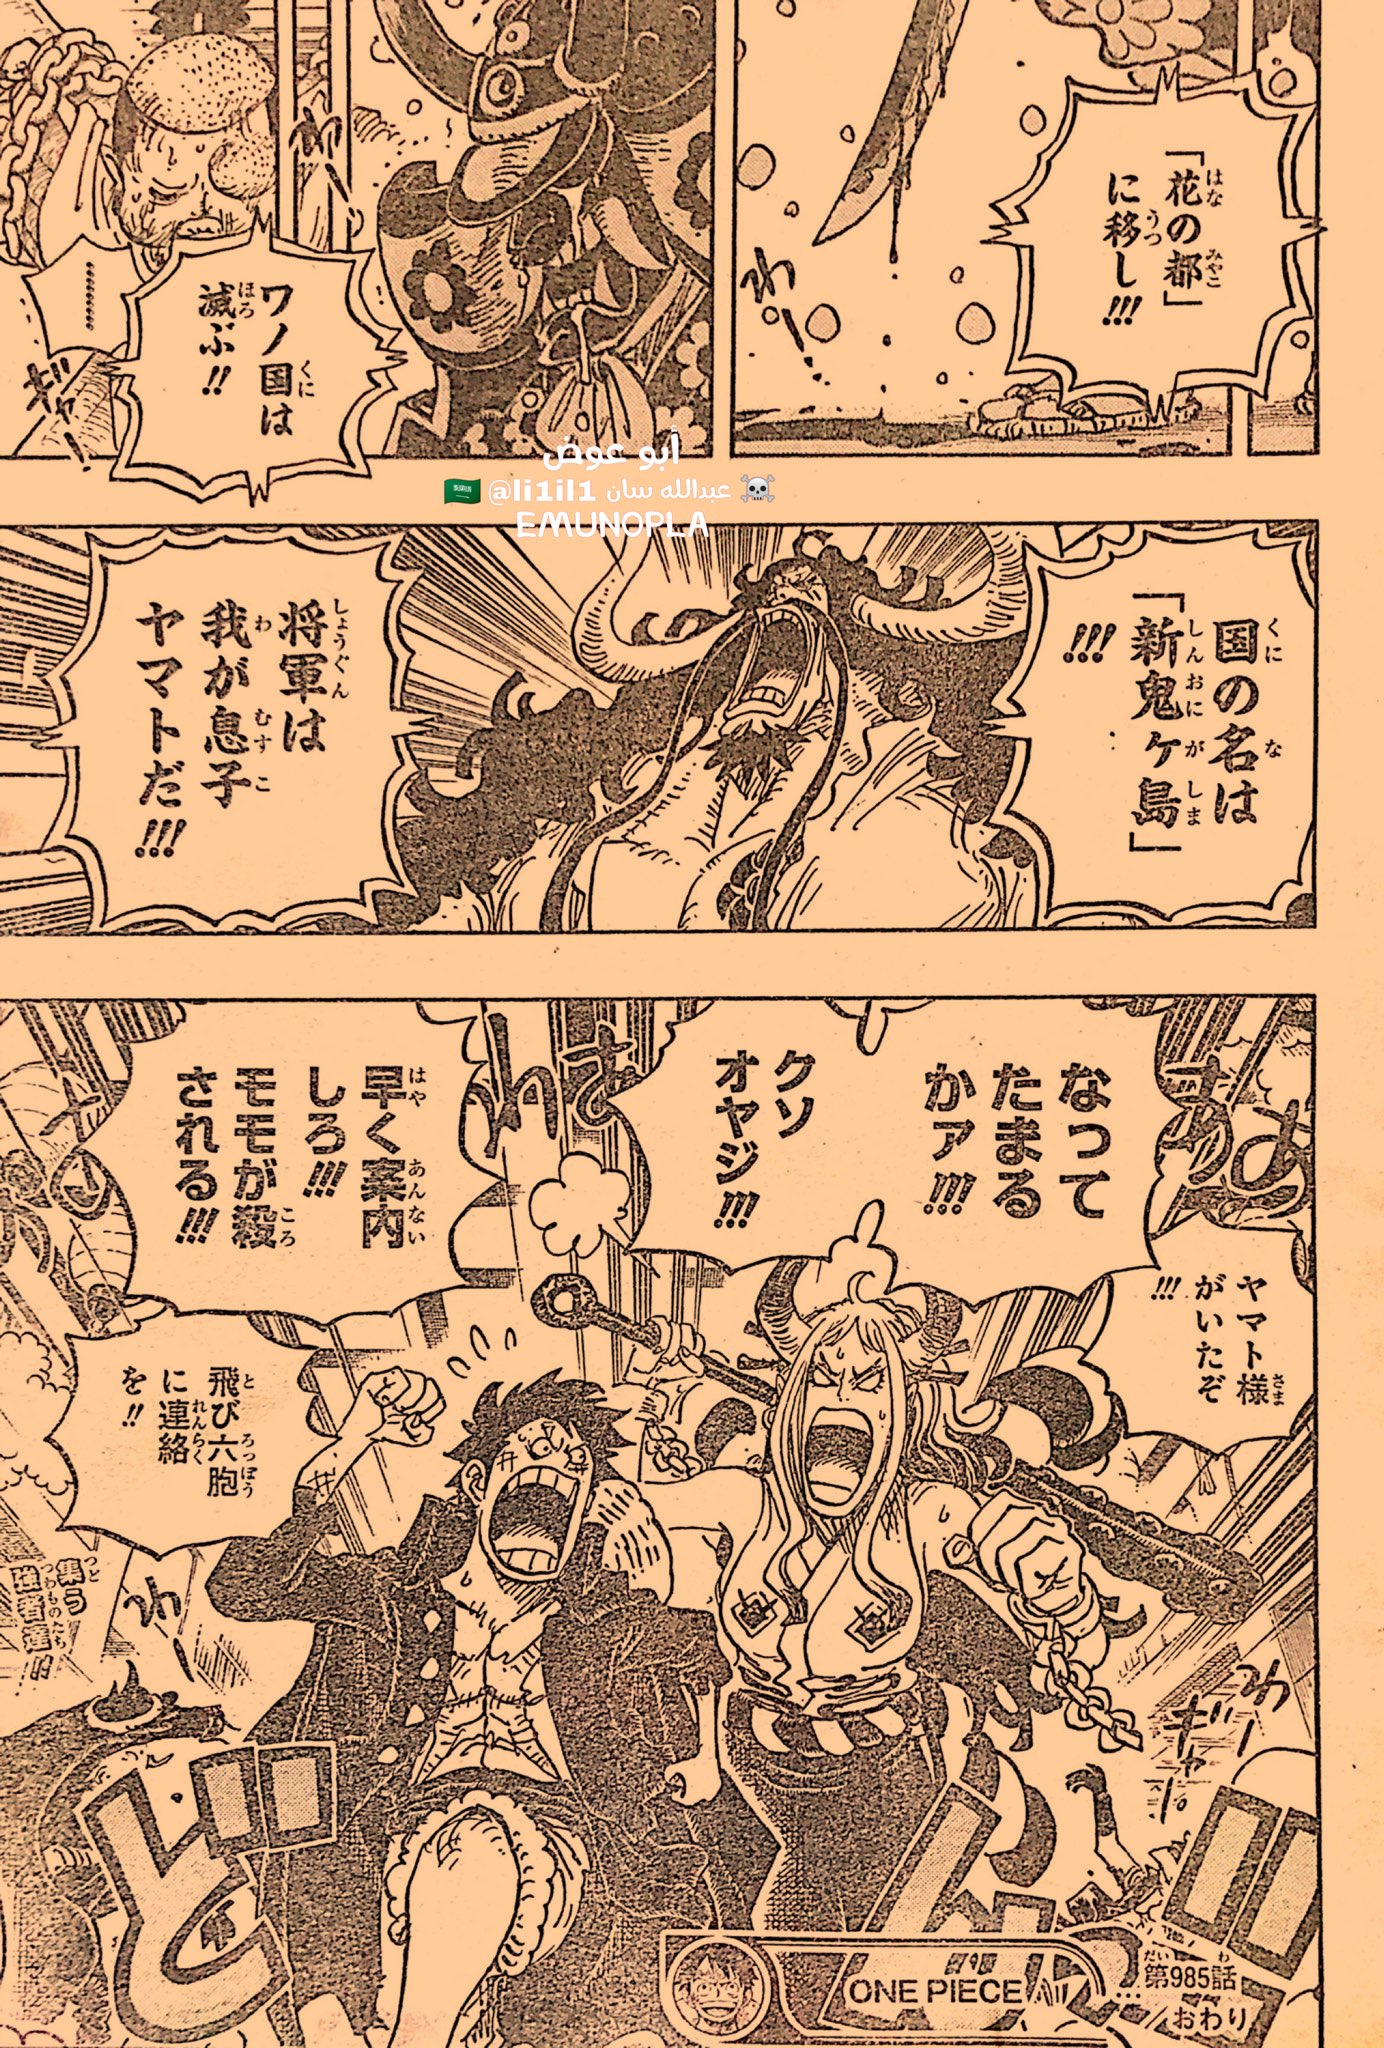 Những hình ảnh ấn tượng nhất trong One Piece chapter 985, Luffy và Yamato bắt đầu hành động - Ảnh 6.